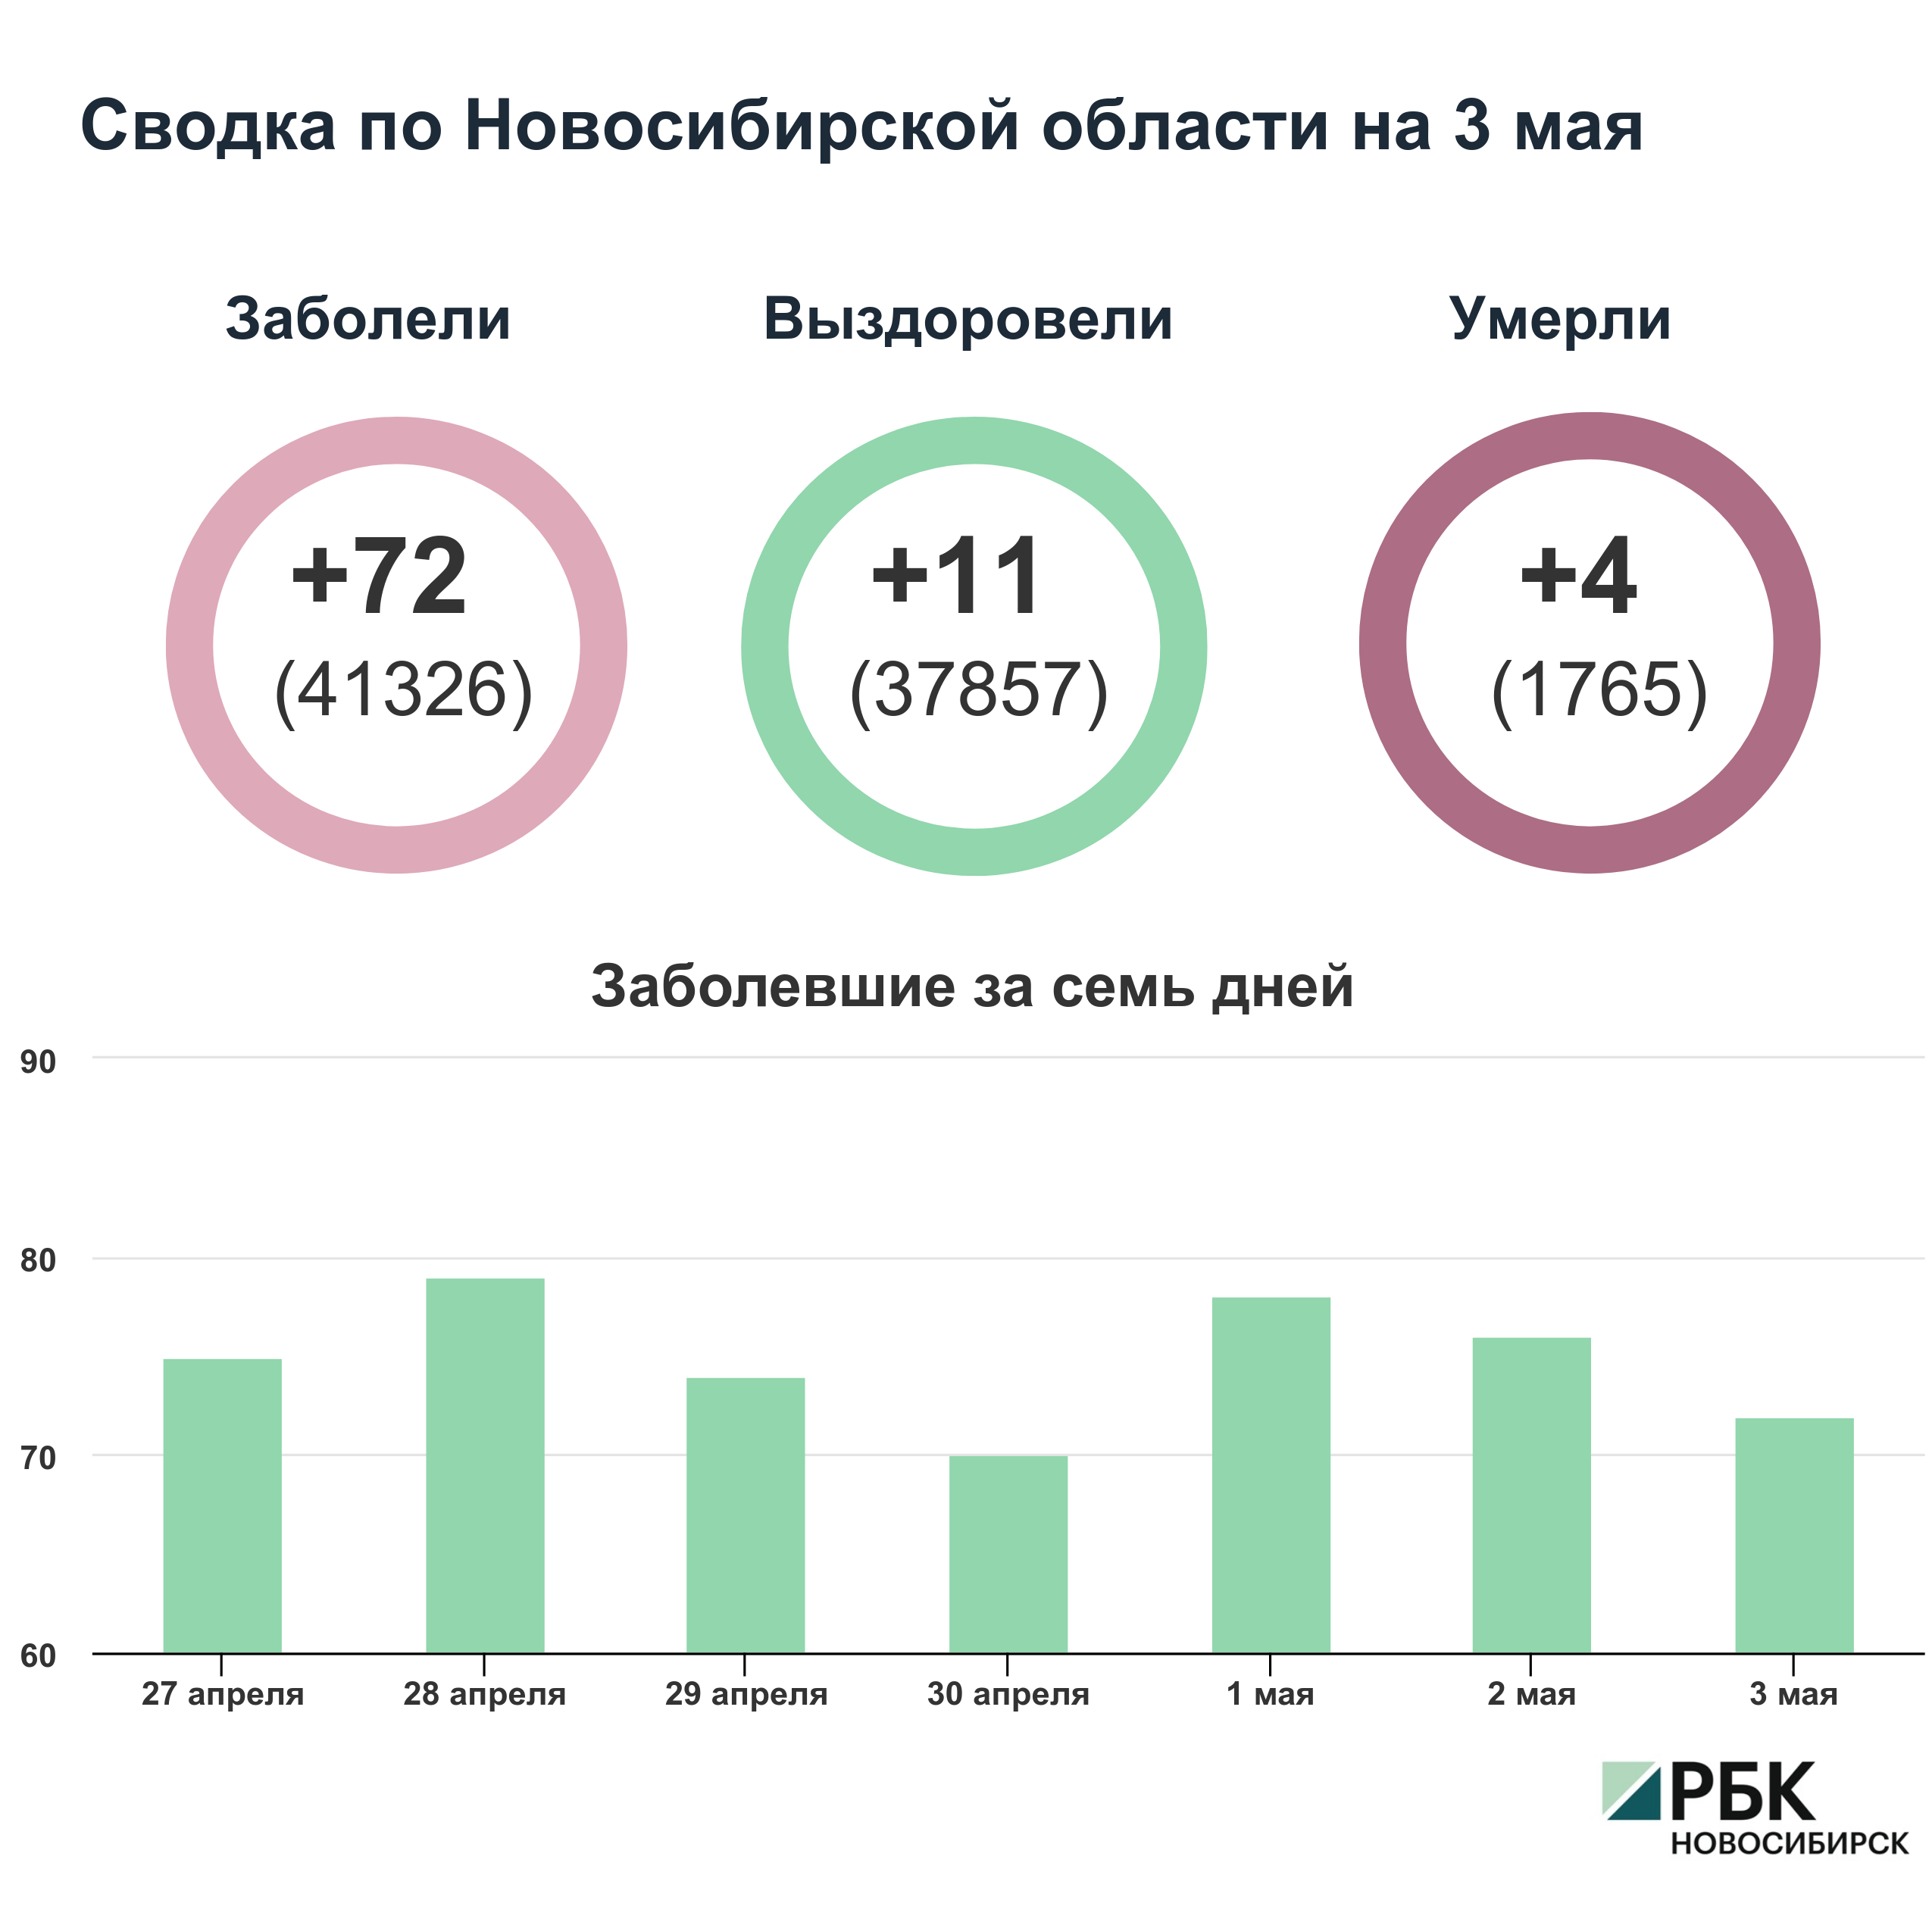 Коронавирус в Новосибирске: сводка на 3 мая